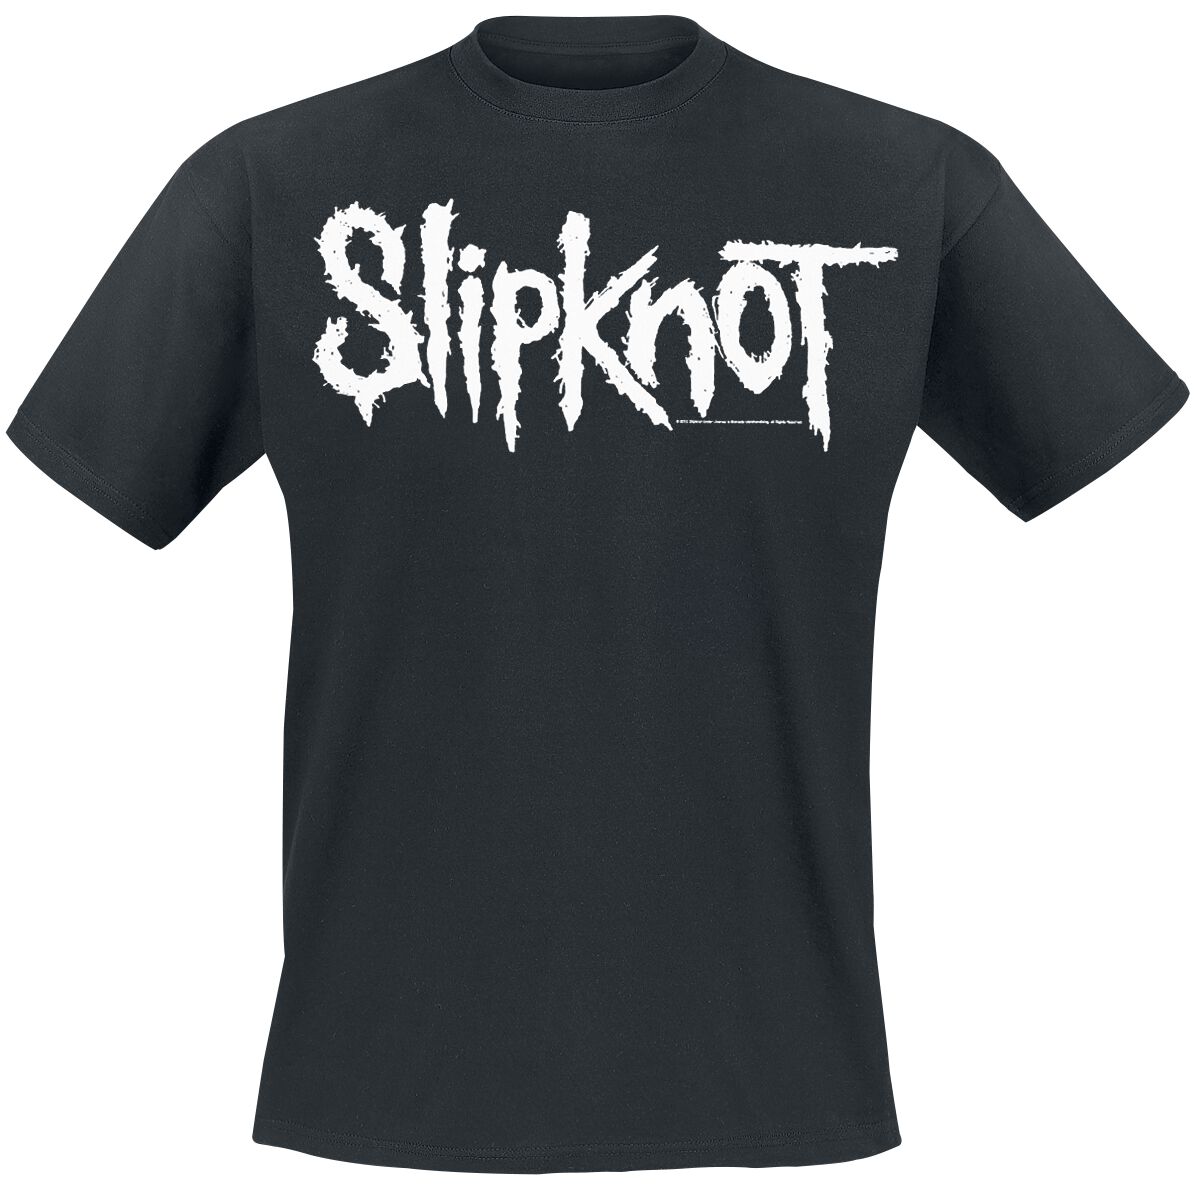 Slipknot T-Shirt - White Logo - S bis 5XL - für Männer - Größe 5XL - schwarz  - EMP exklusives Merchandise!